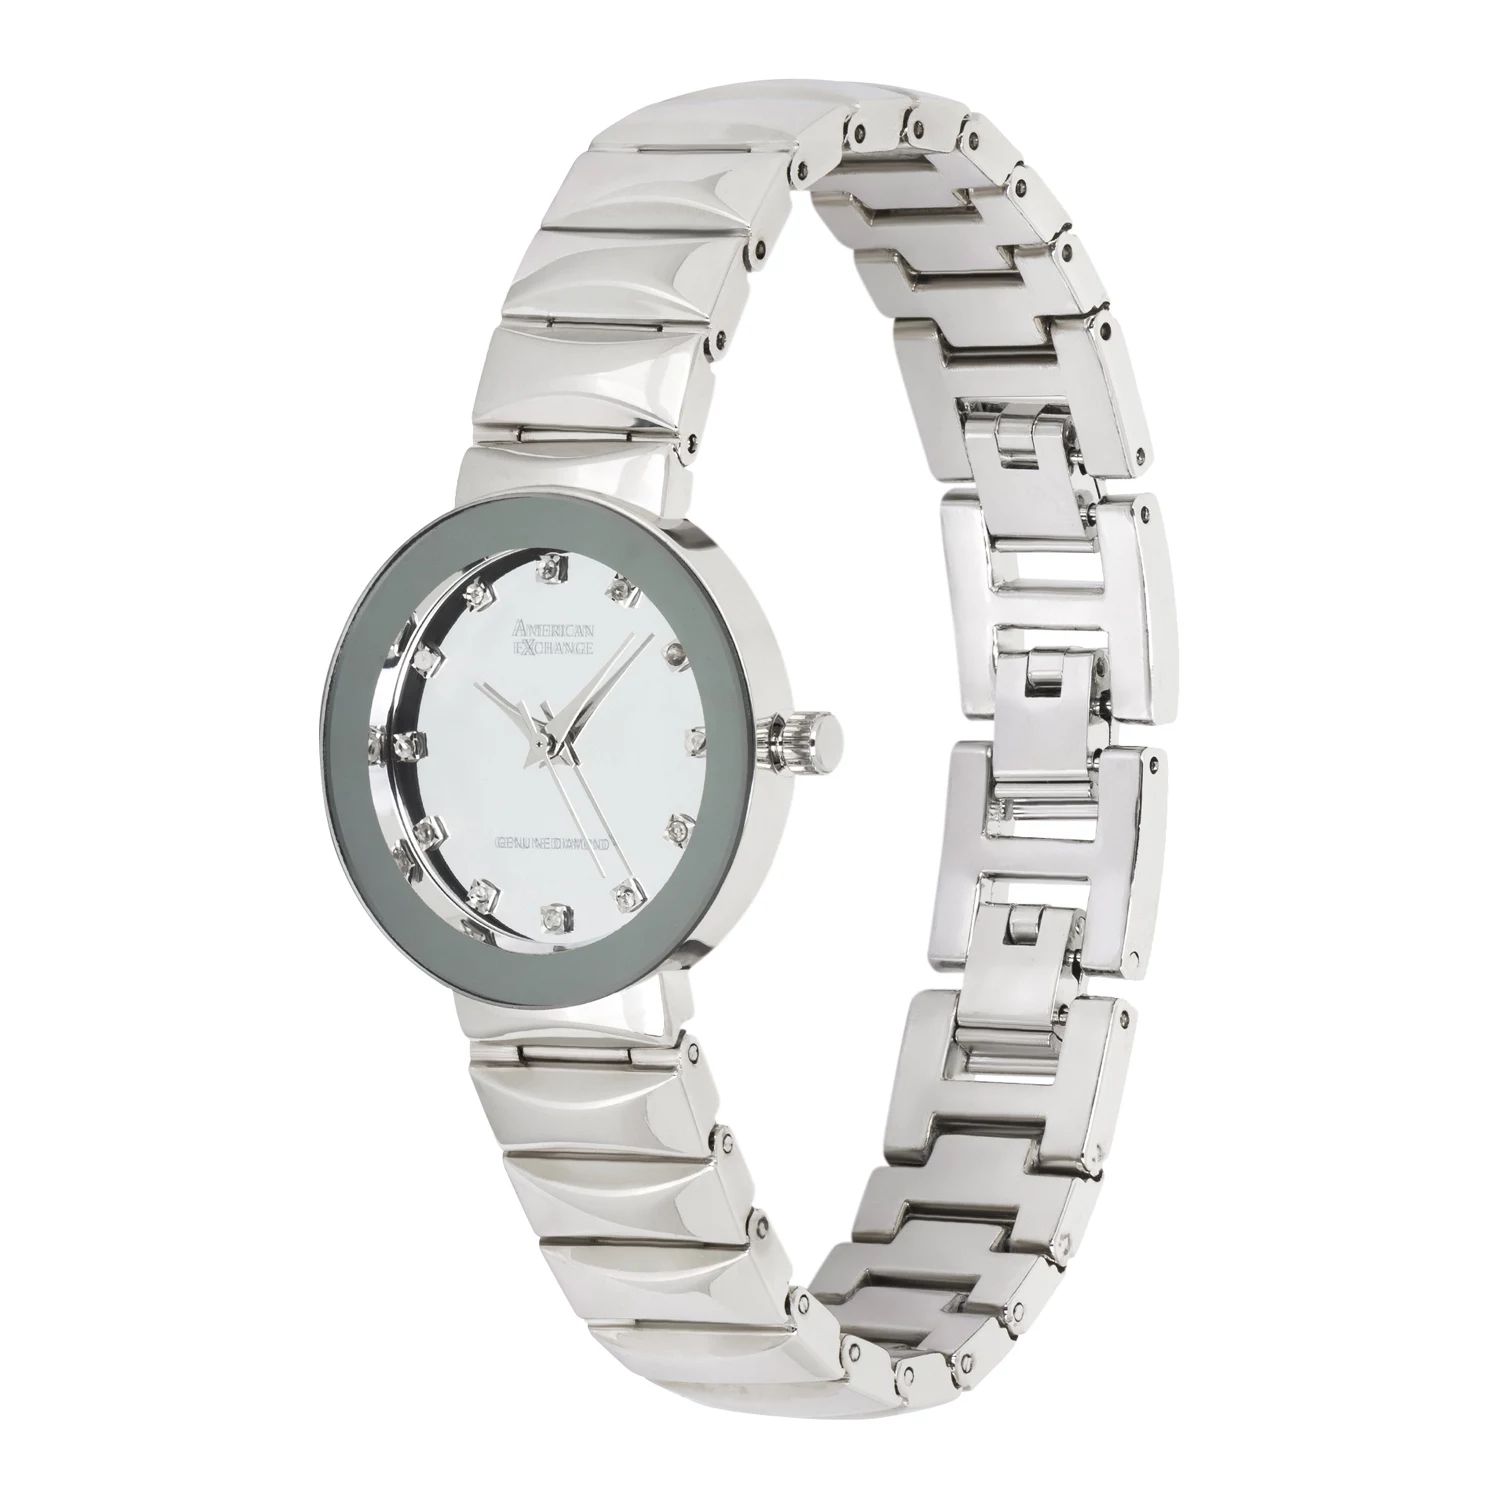 Женские часы с браслетом серебряного тона из коллекции Genuine Diamond Collection American Exchange